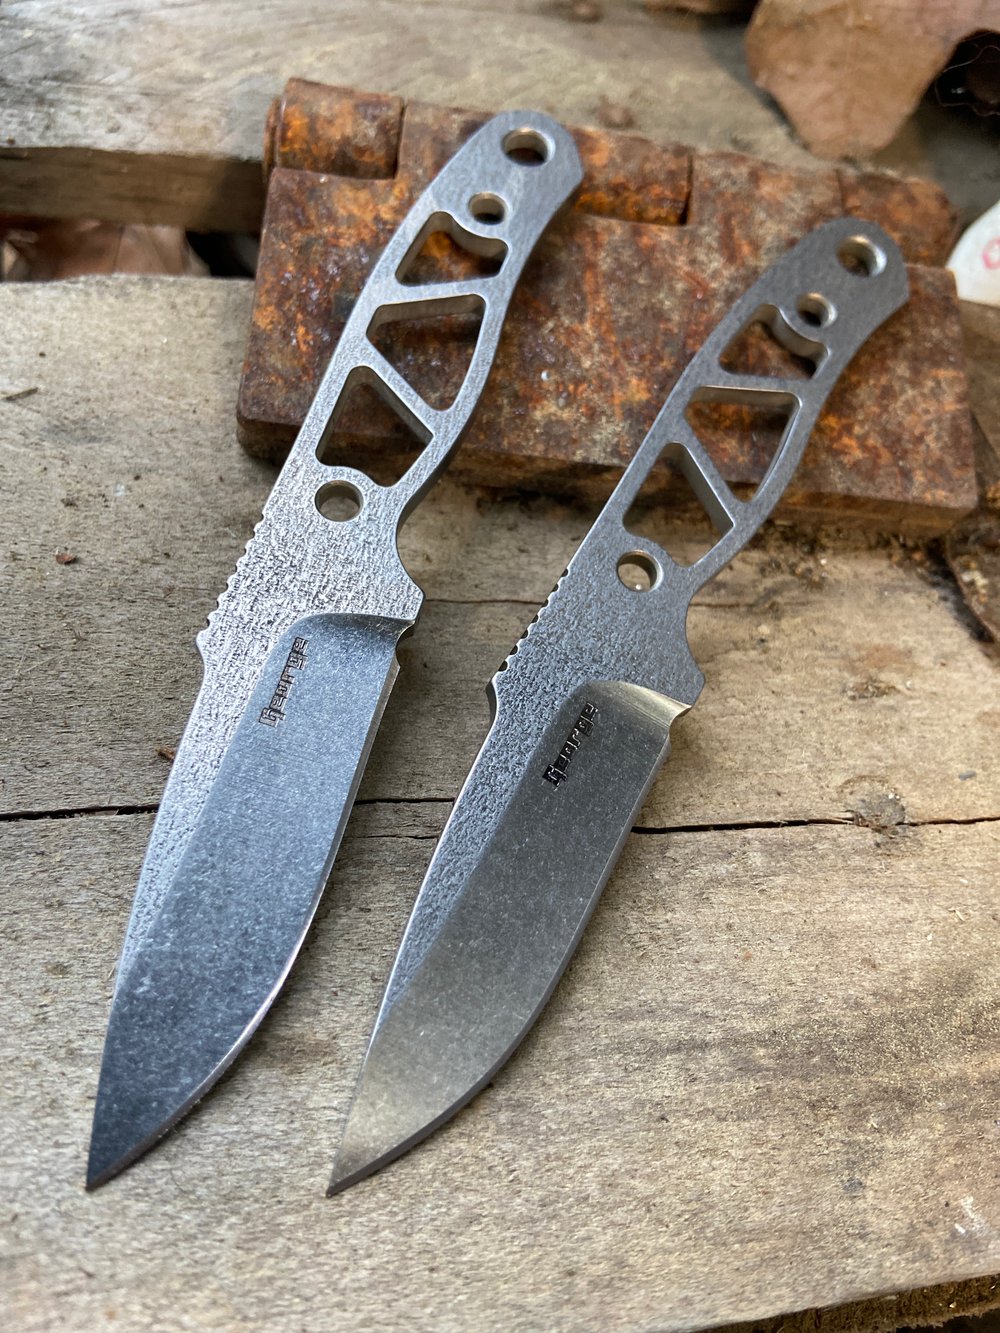 Little knives